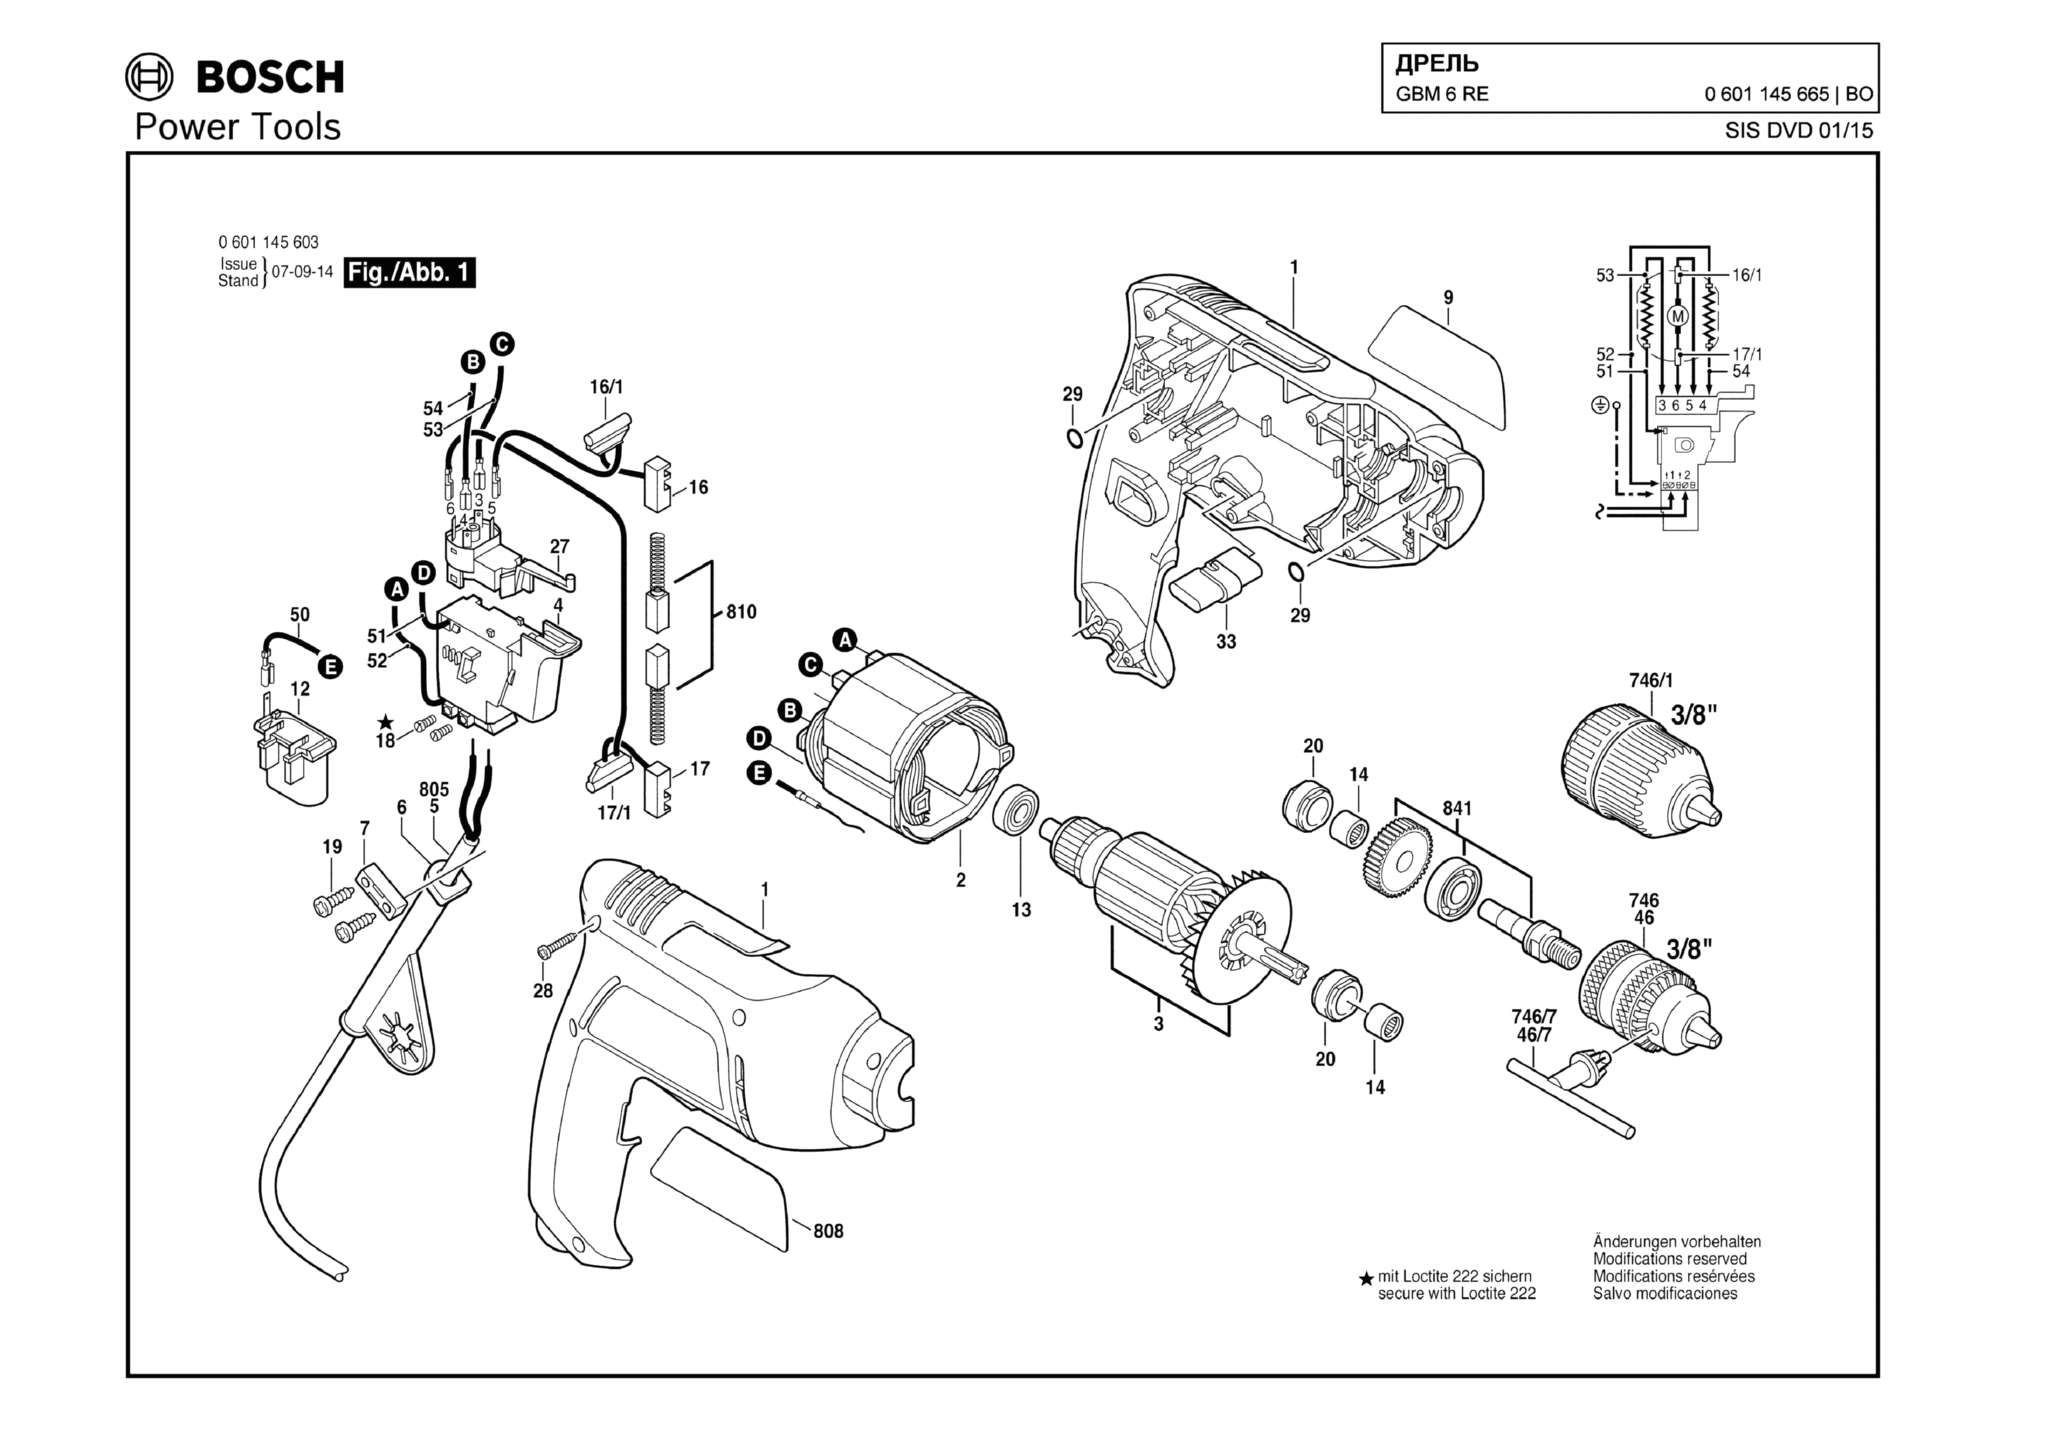 Запчасти, схема и деталировка Bosch GBM 6 RE (ТИП 0601145665)